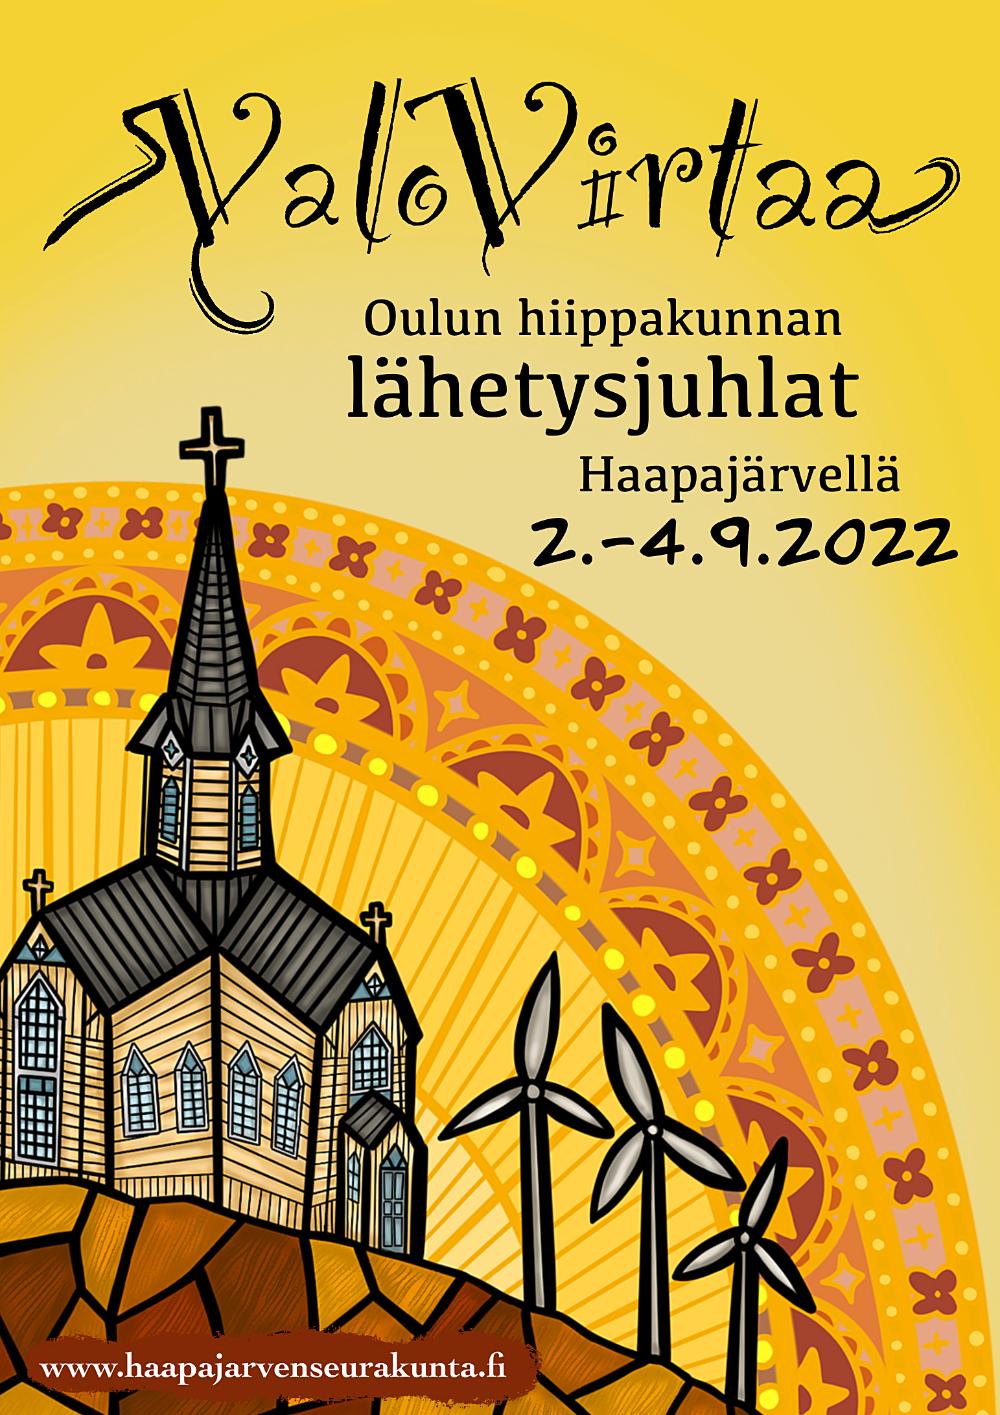 Lähetysjuhlien juliste, piirretty Haapajärven kirkko ja tuulimyllyjä